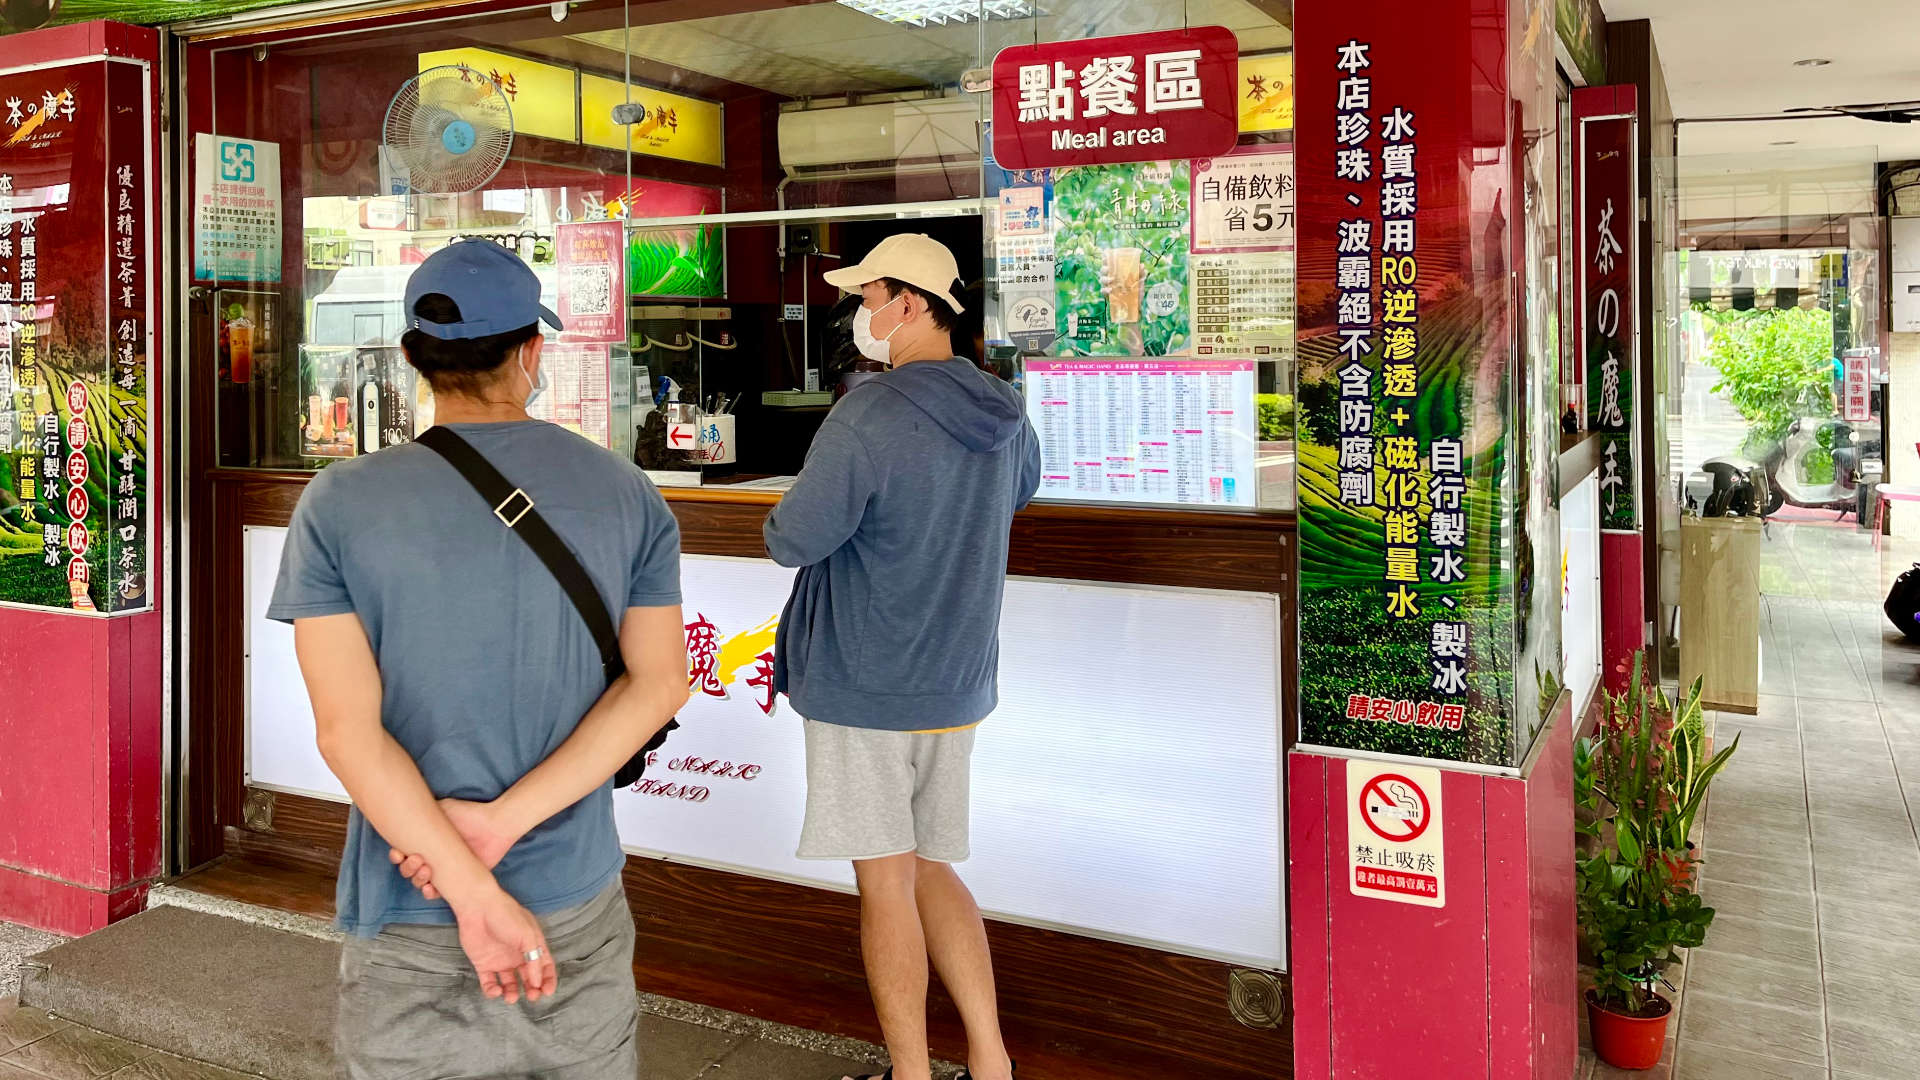 Customers standing outside a take-away tea shop in Kaoshiung, Taiwan.